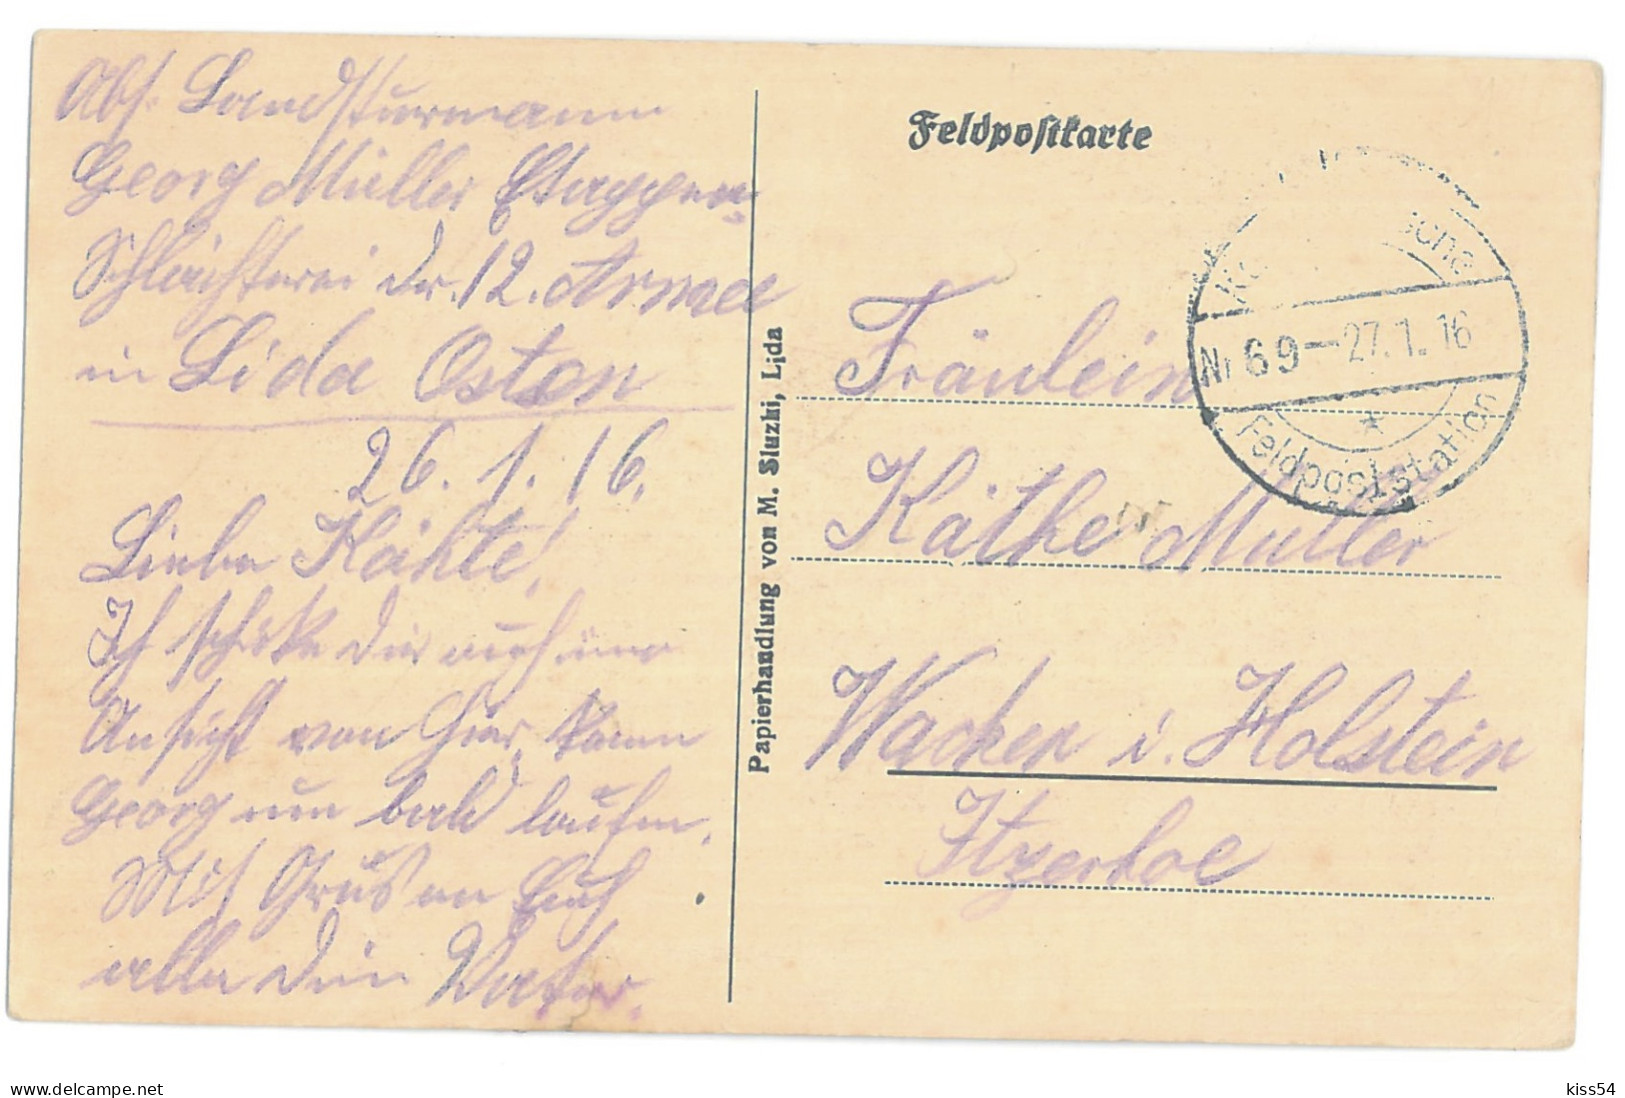 BL 32 - 14637 LIDA, House In Fire, Belarus - Old Postcard, CENSOR - Used - 1916 - Wit-Rusland